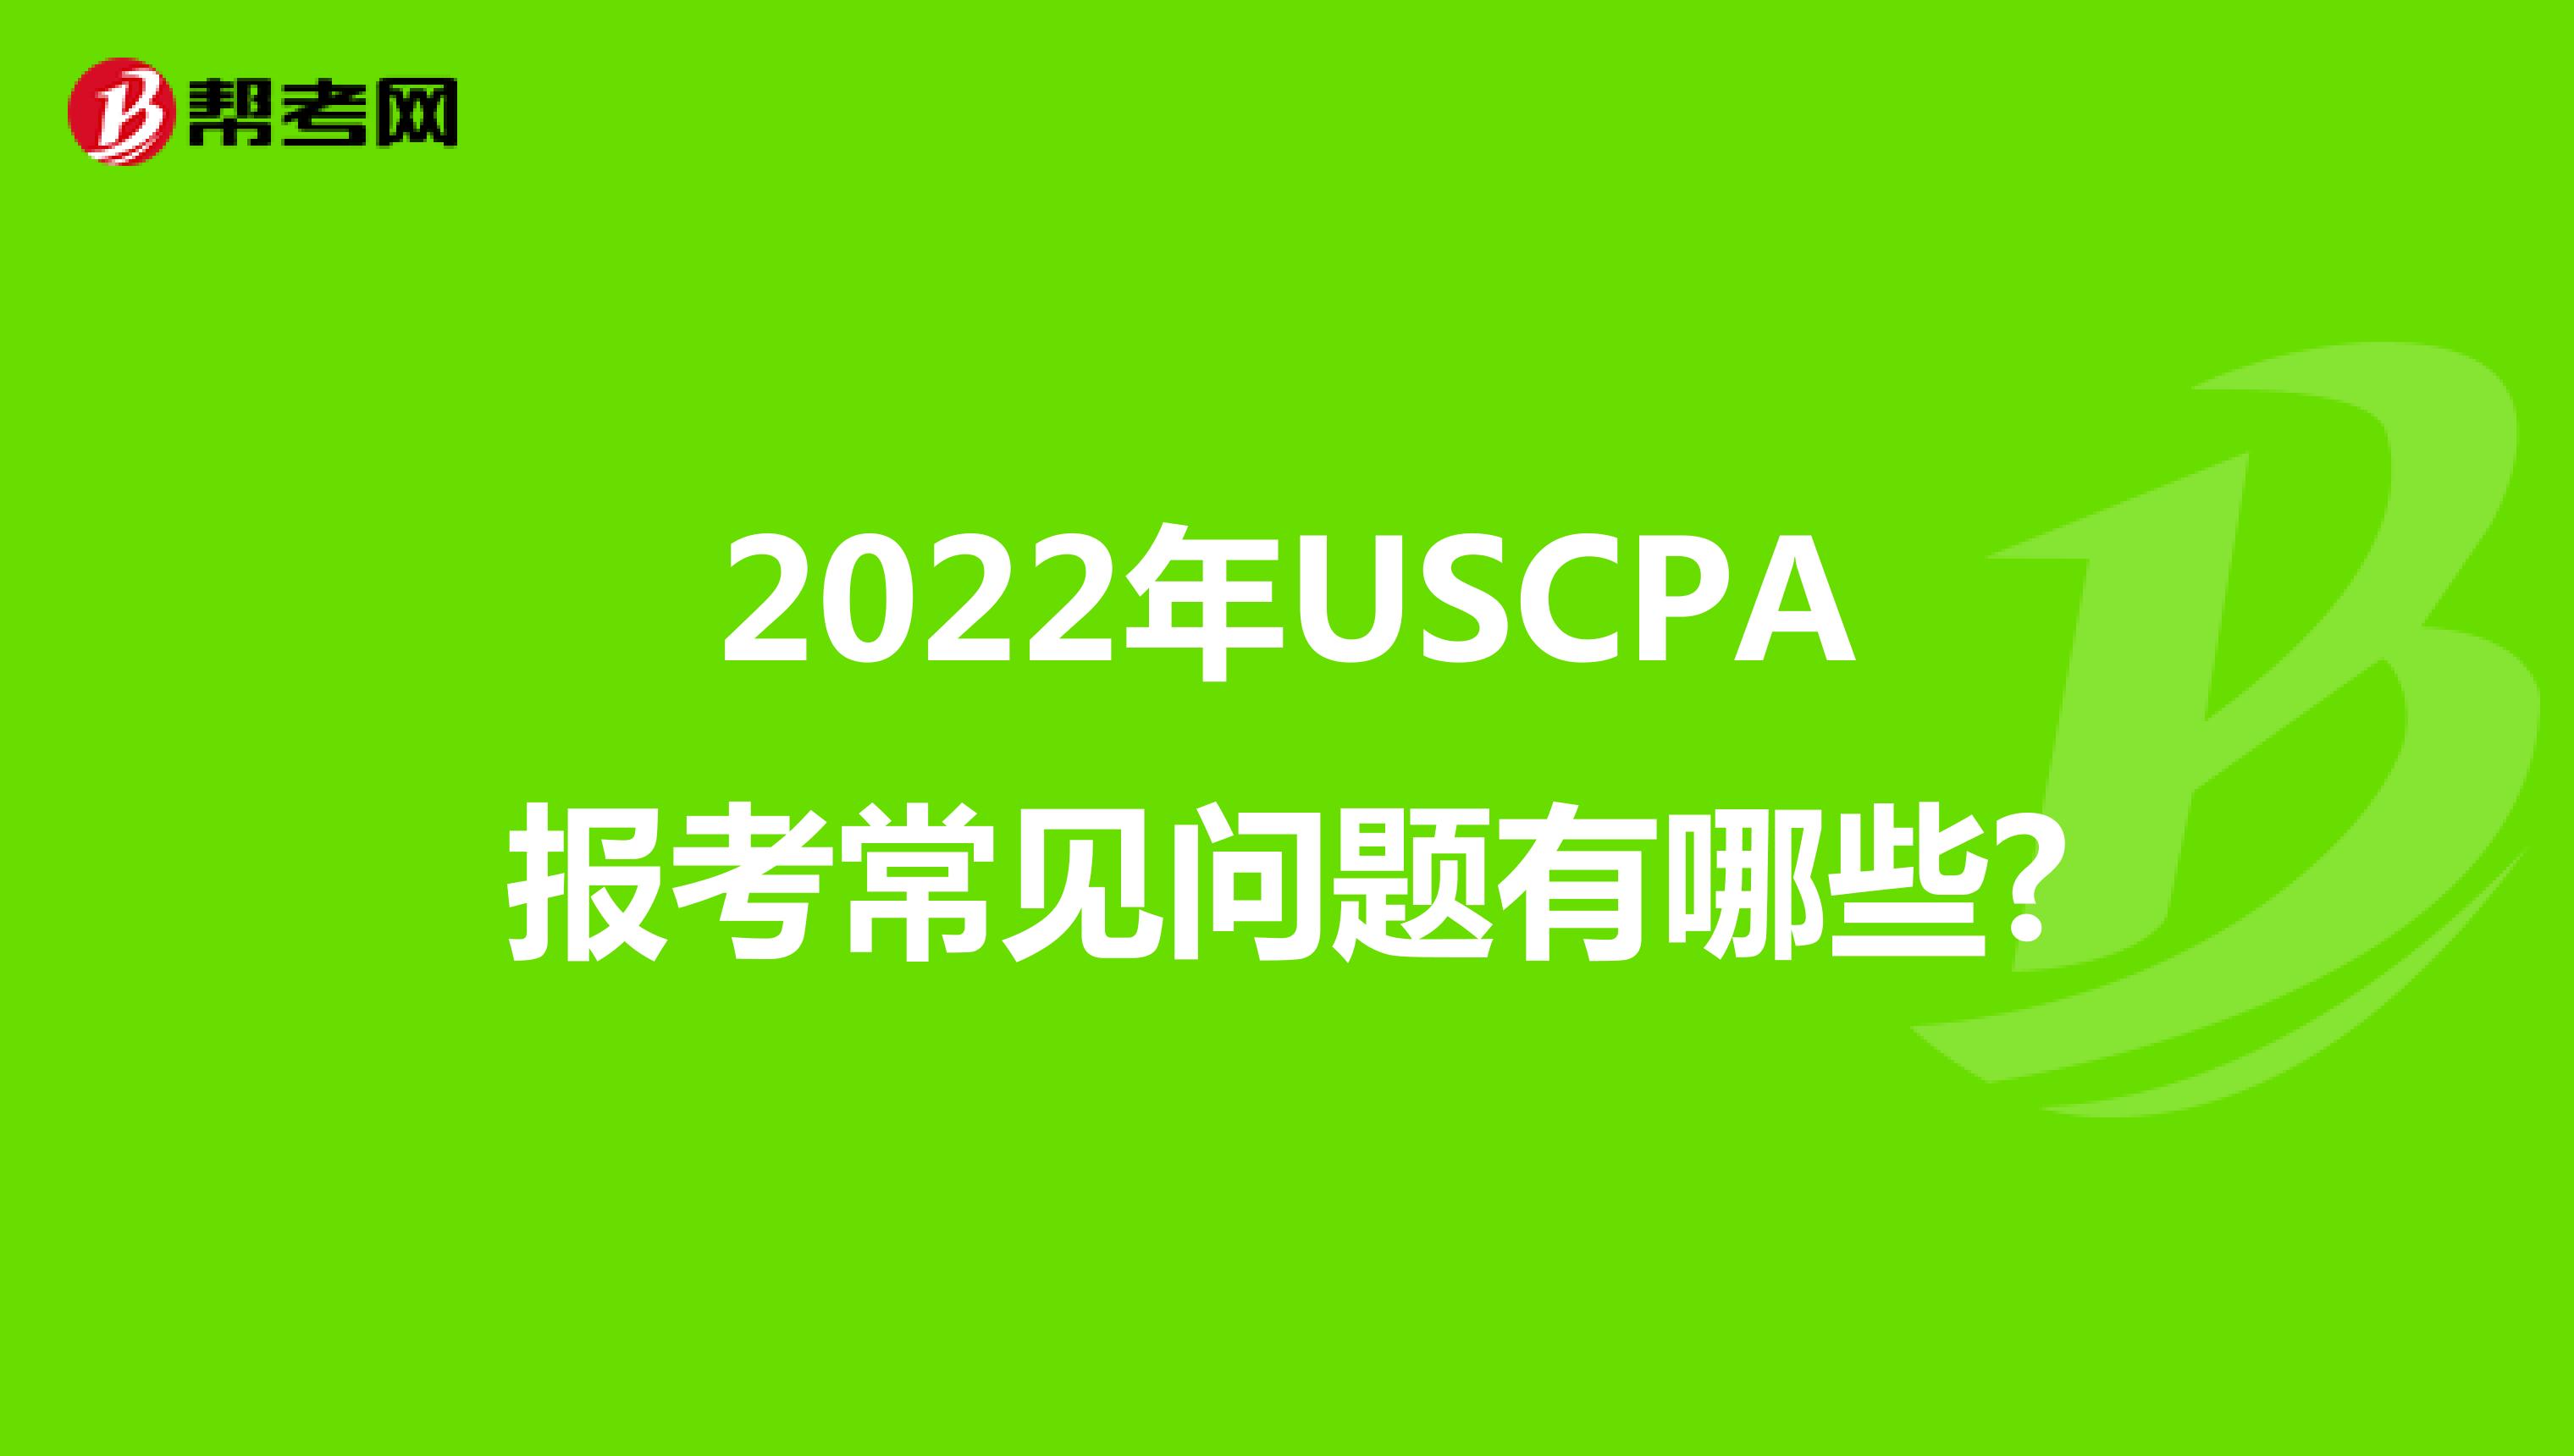 2022年USCPA报考常见问题有哪些?